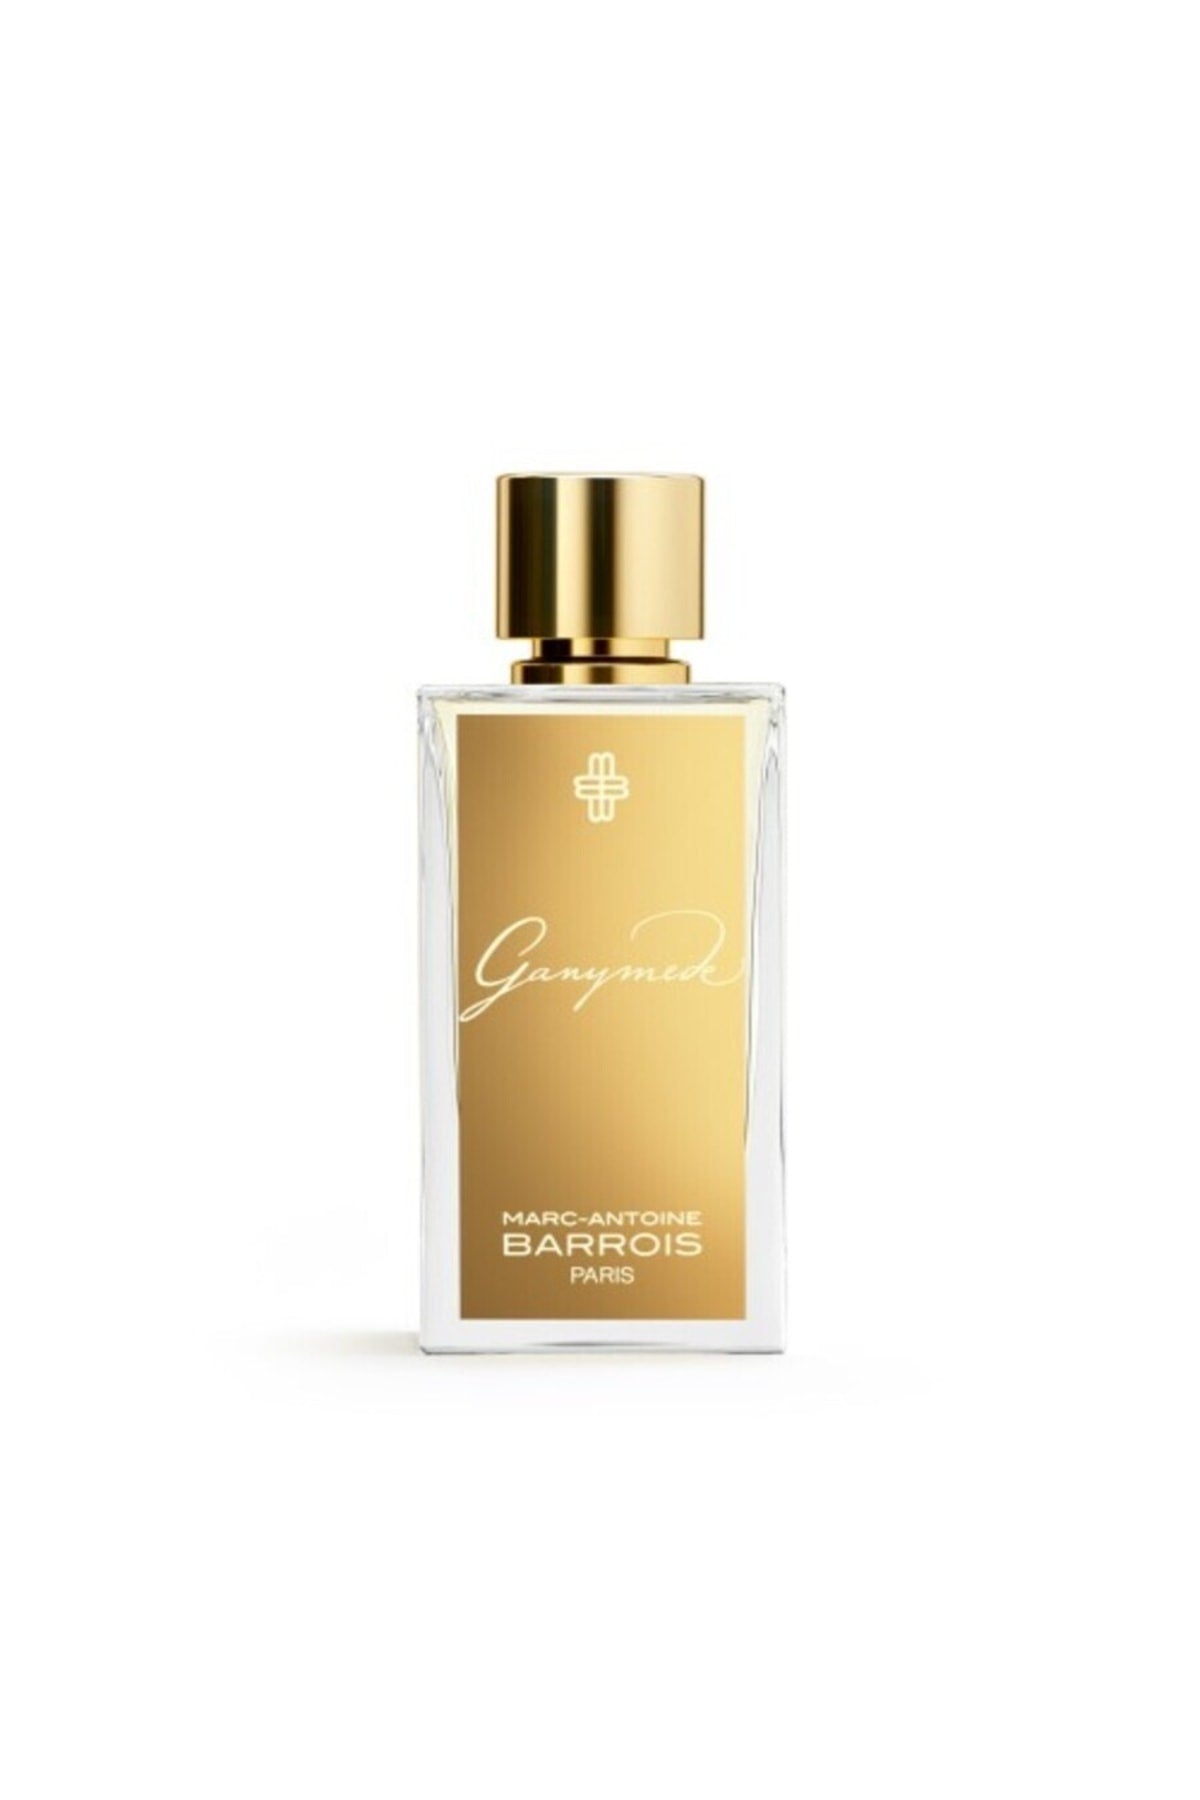 (Strict Limit 1) Marc Antoine Barrois Ganymede Extrait de Parfum M 50ml Boxed (Rare Selection)